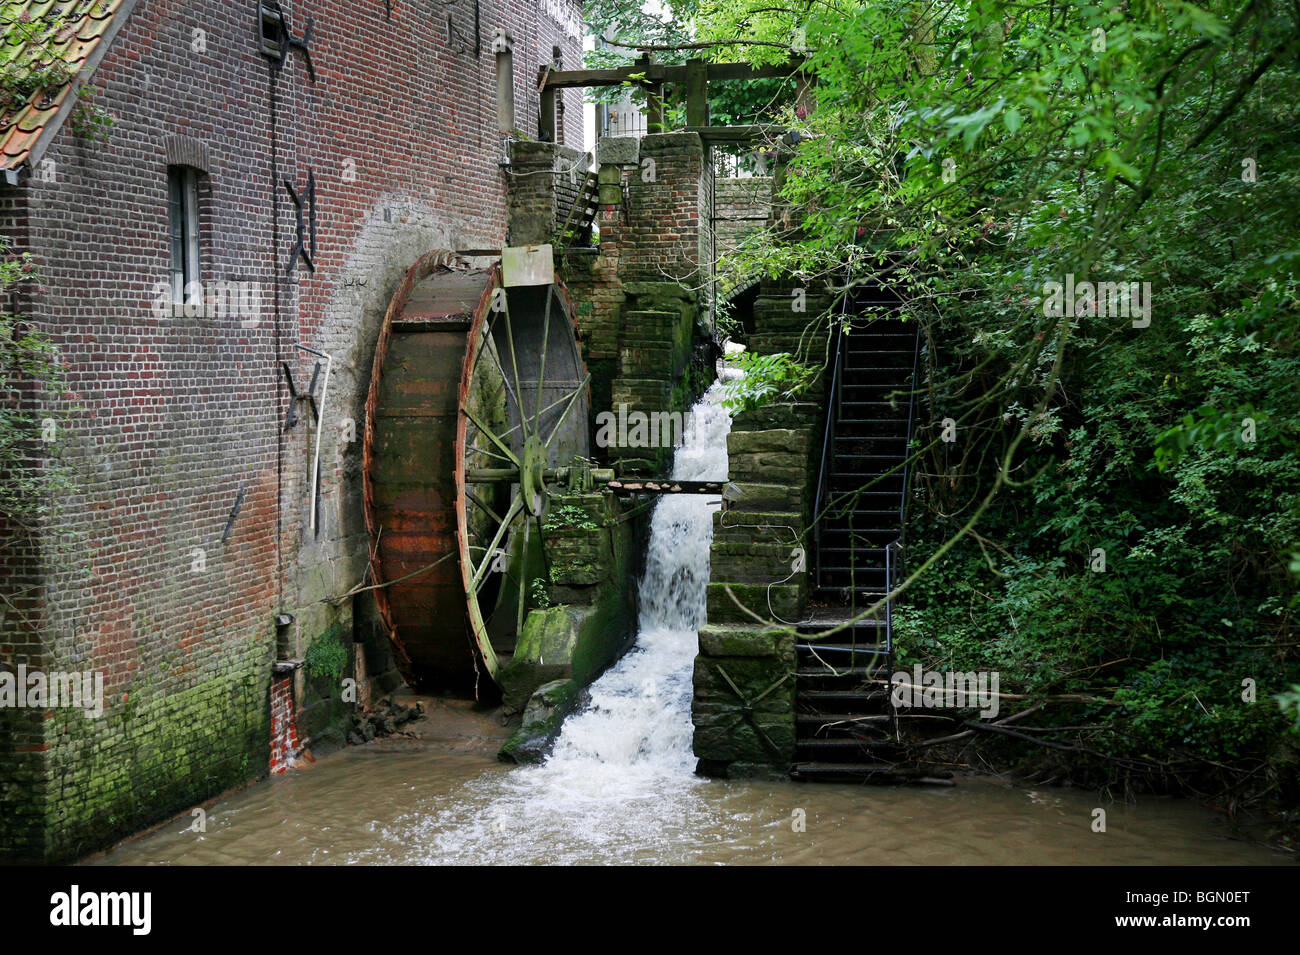 L'ancien moulin à eau Moldergem à St-Denijs-Boekel, Paris, Belgique Banque D'Images